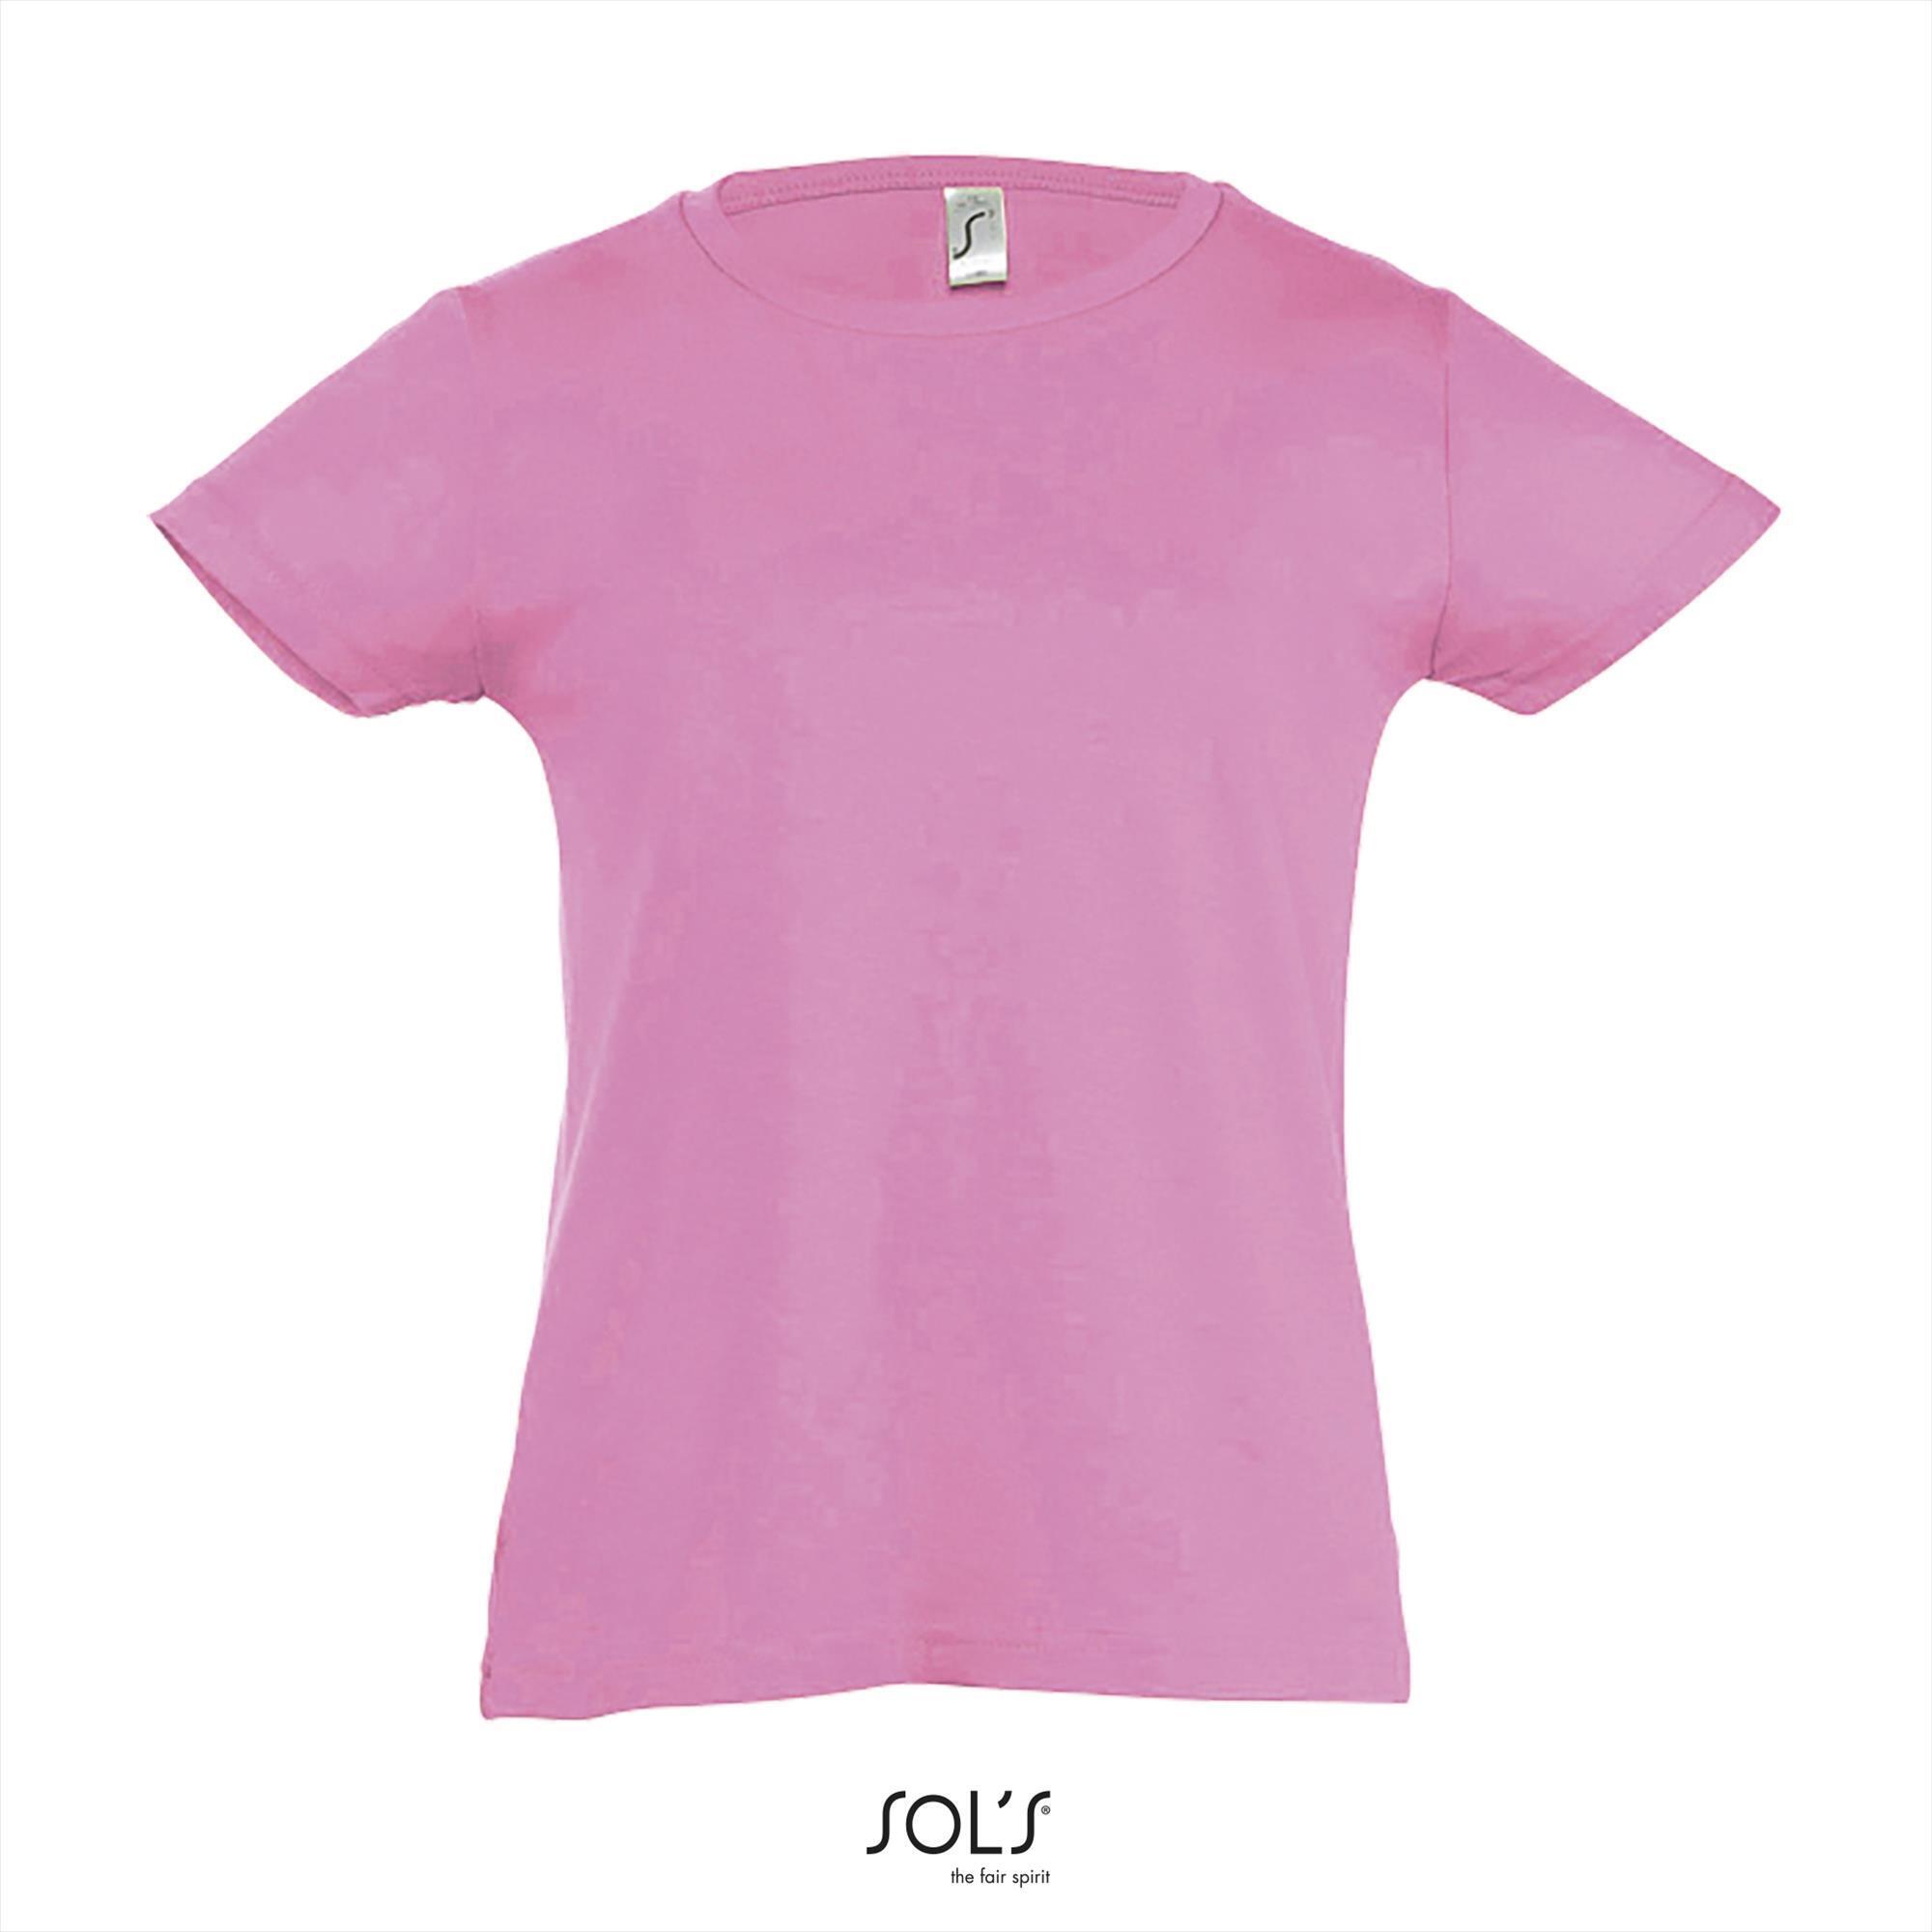 T-shirt voor meisjes orchidee roze ronde hals